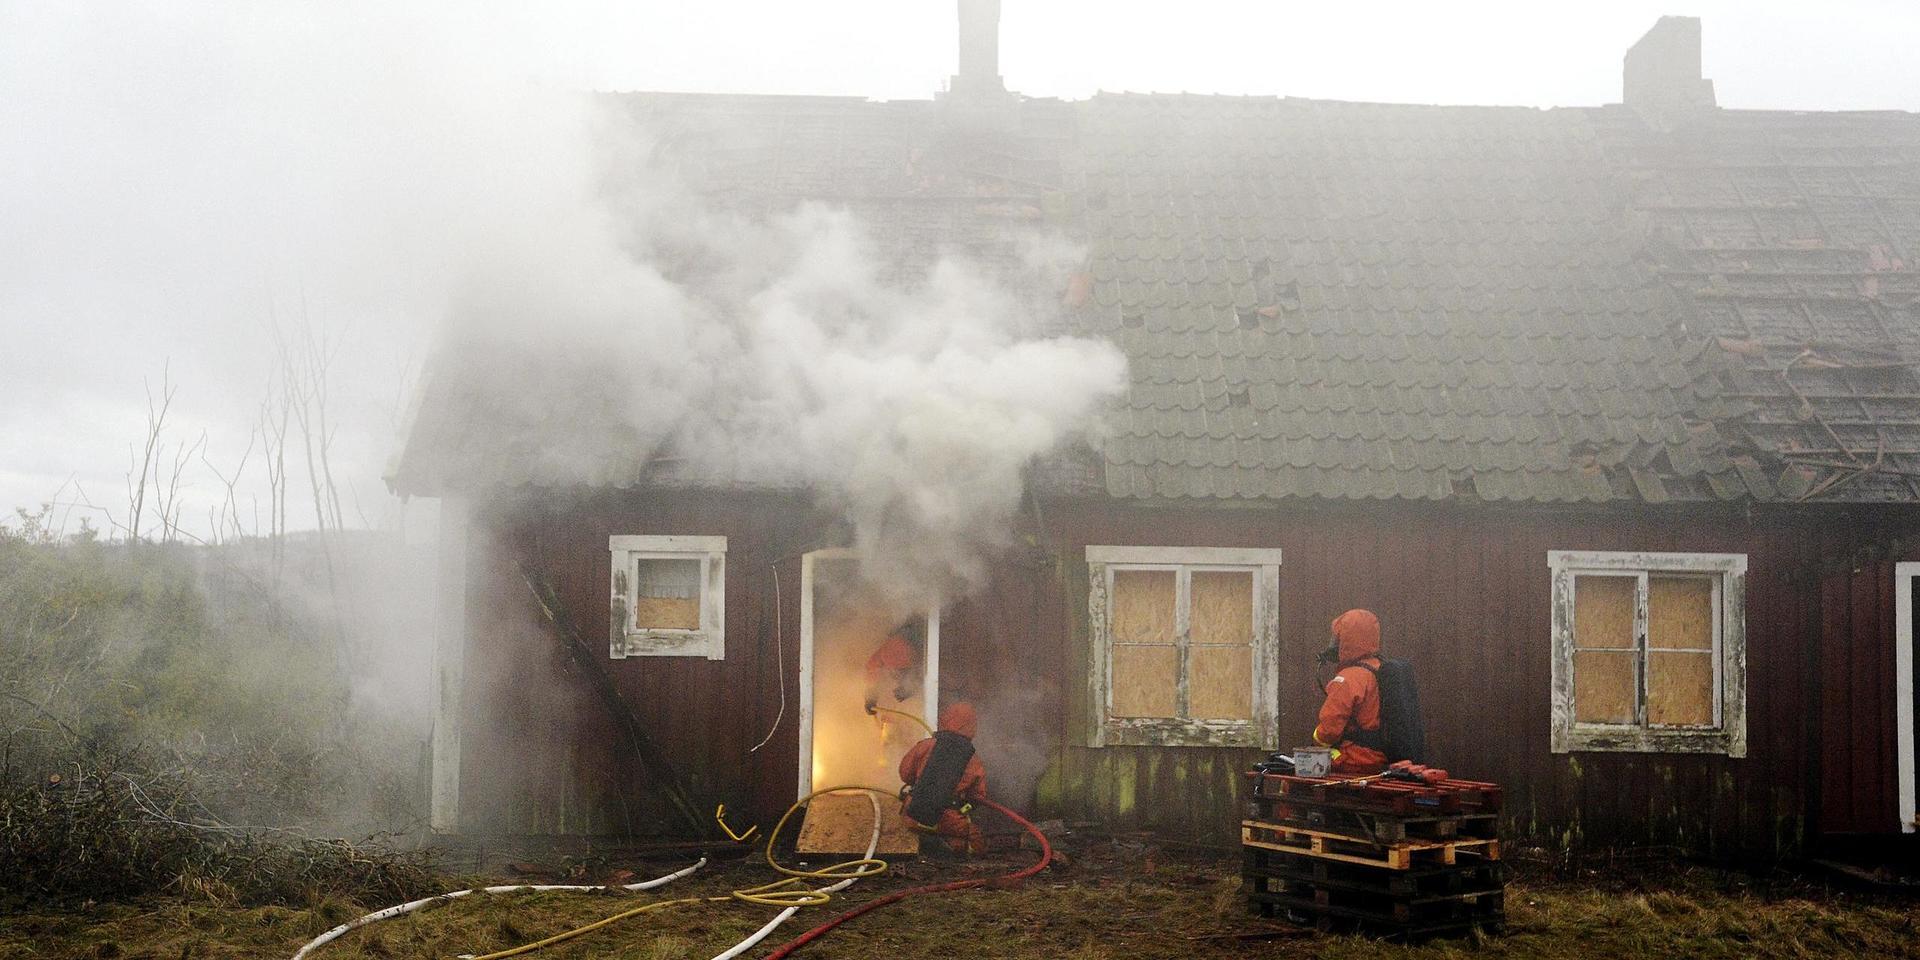 I slutet av 2012 använda Räddningstjänsten i Halmstad ödehuset som övningsobjekt och eldade upp det. 2015 blev den våldtäktsdömde mannen villkorligt frigiven.